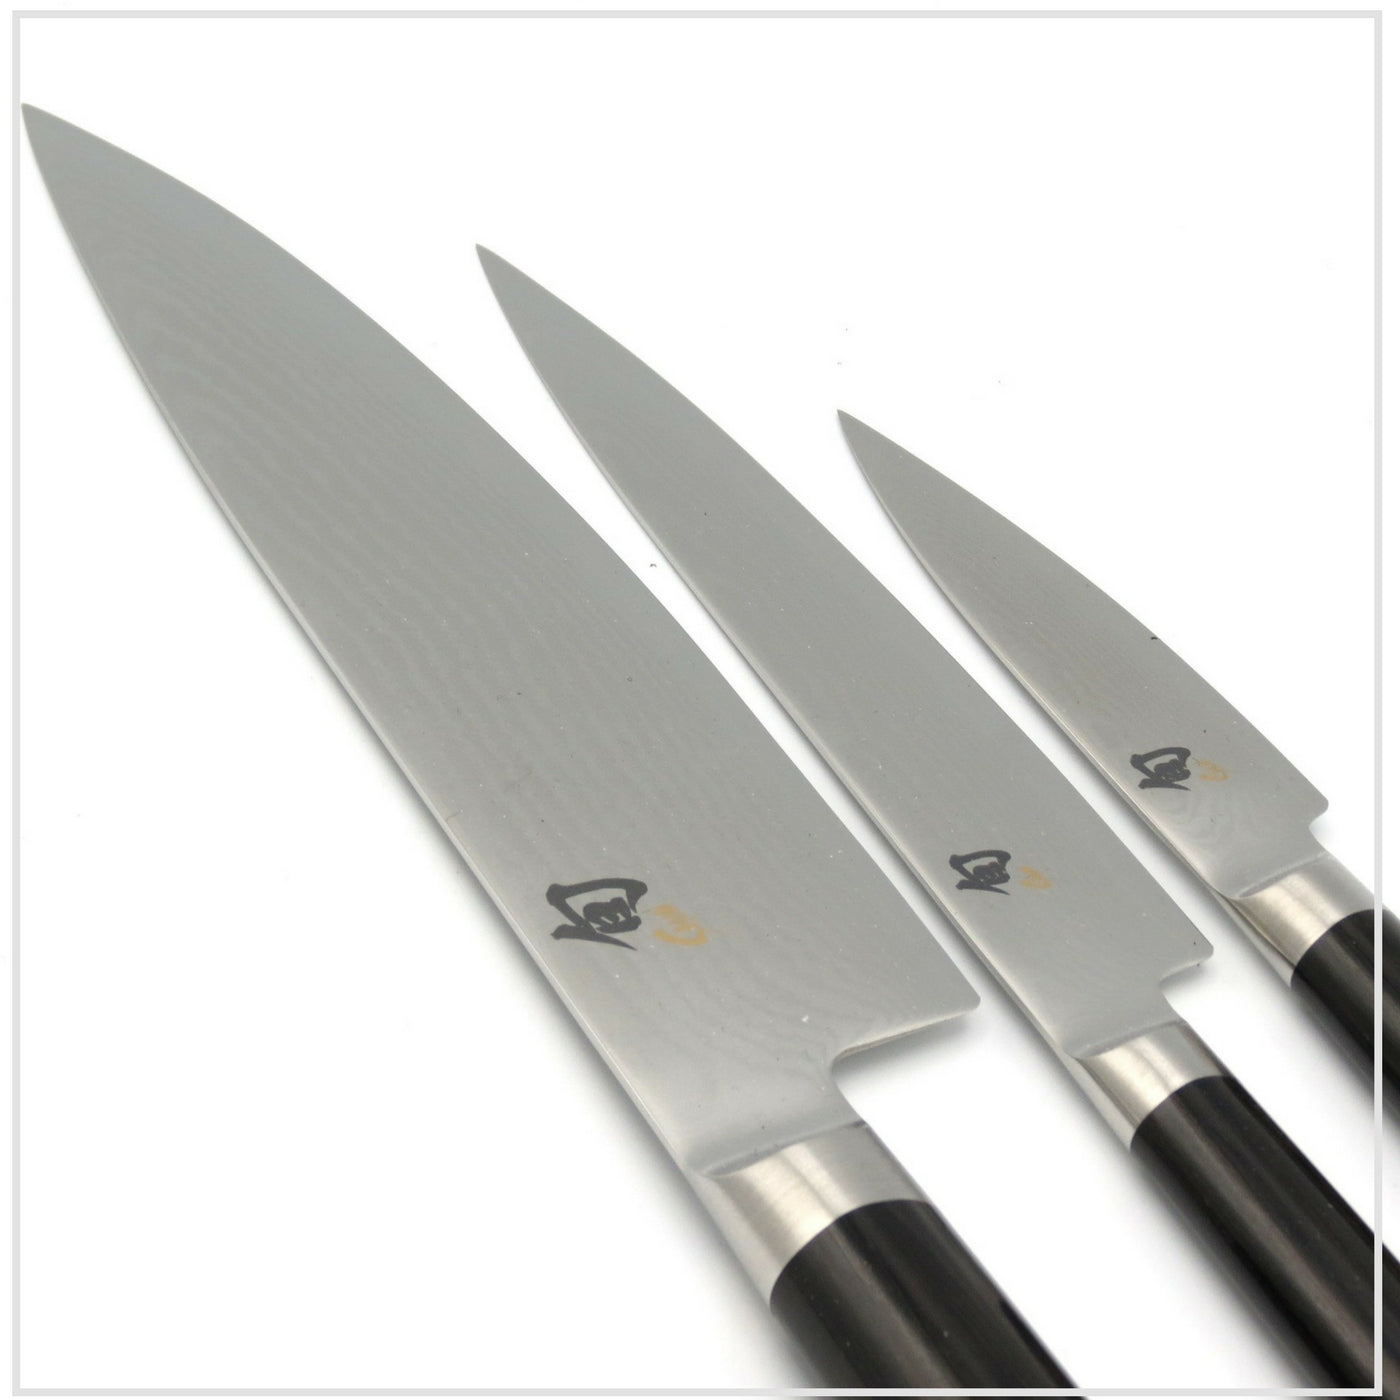 KAI SHUN Knife Set - Chef's, Paring, Utility